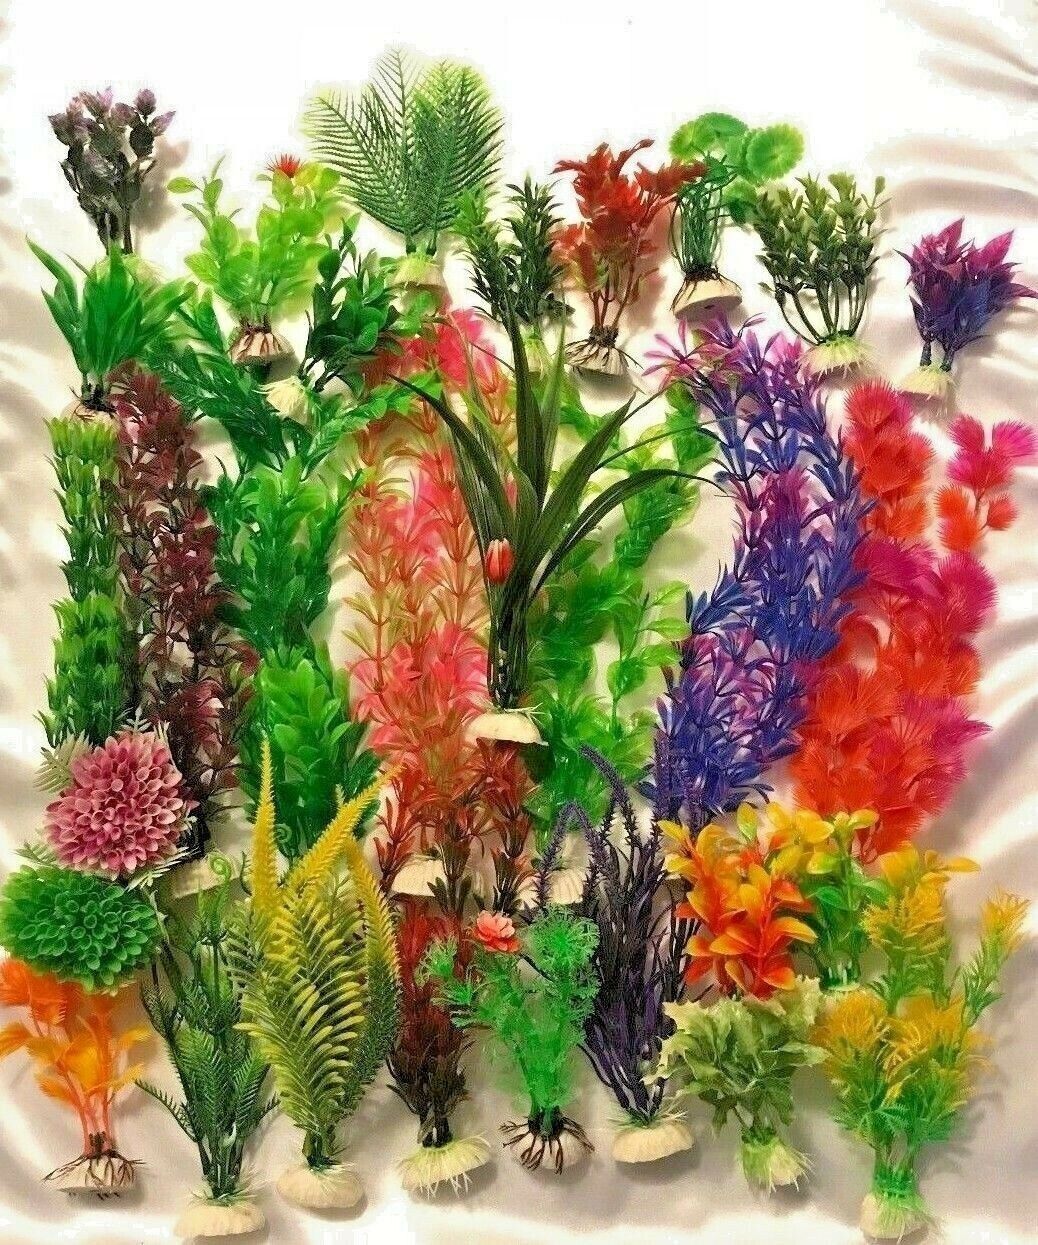 Artificial Plastic Aquarium plants - Mixed lots - Lots of 15 plants